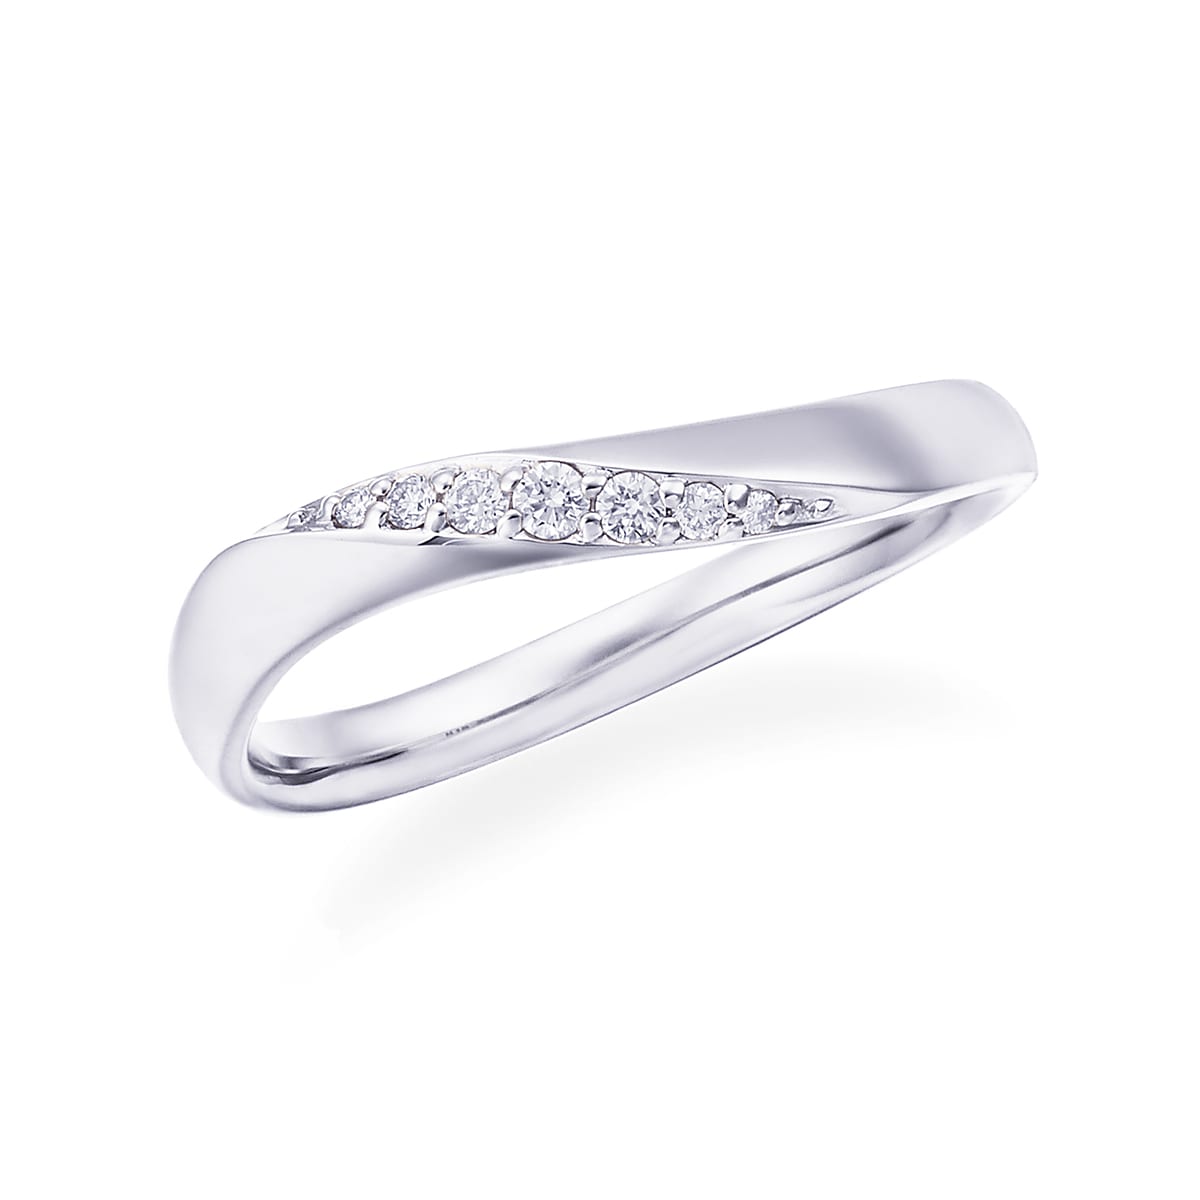 【結婚指輪】プラチナとダイヤモンドの異なる輝きが美しく重なり合う個性的なデザインが美しいプラチナマリッジリング